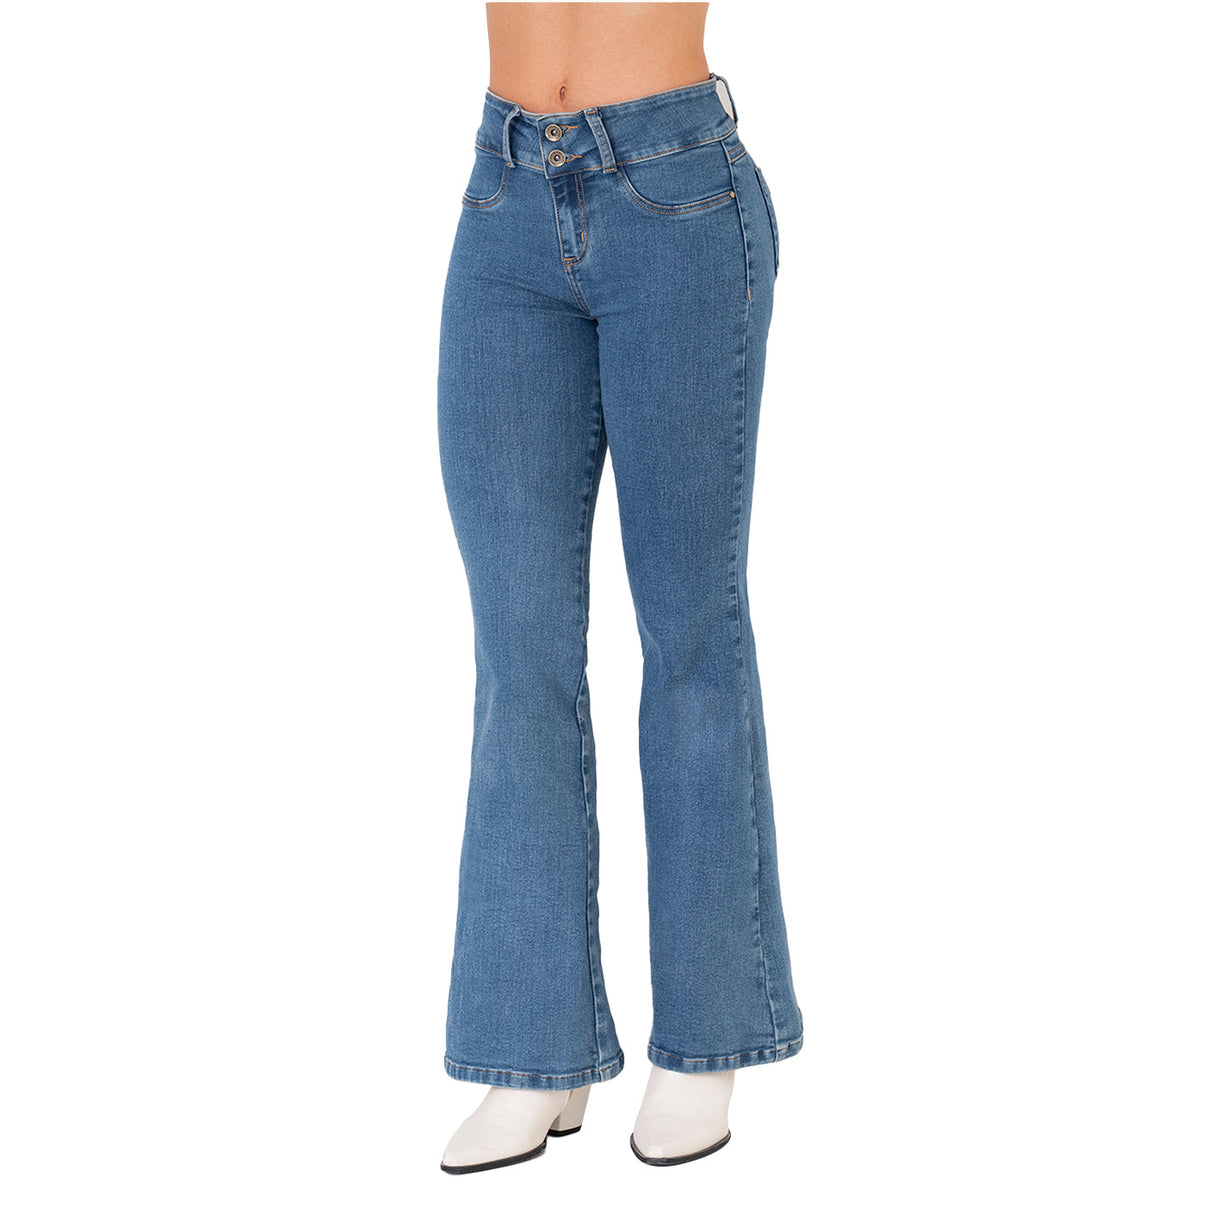 Jeans Colombiano Verox 5305 – Colombian Jeans & Fajas